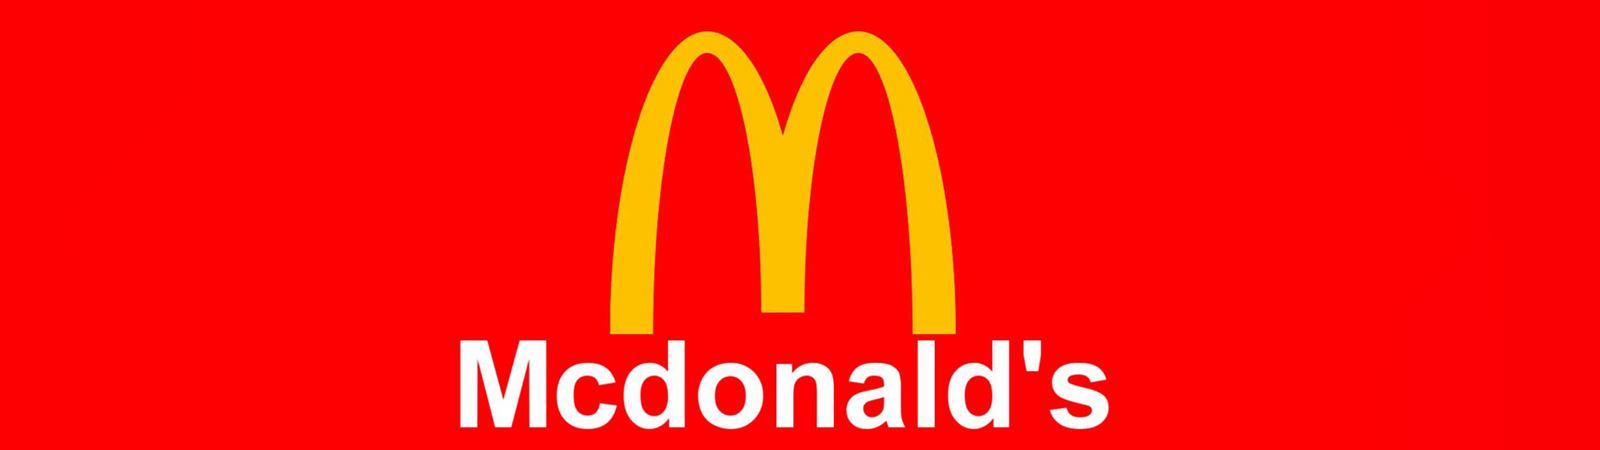 9. McDonald's